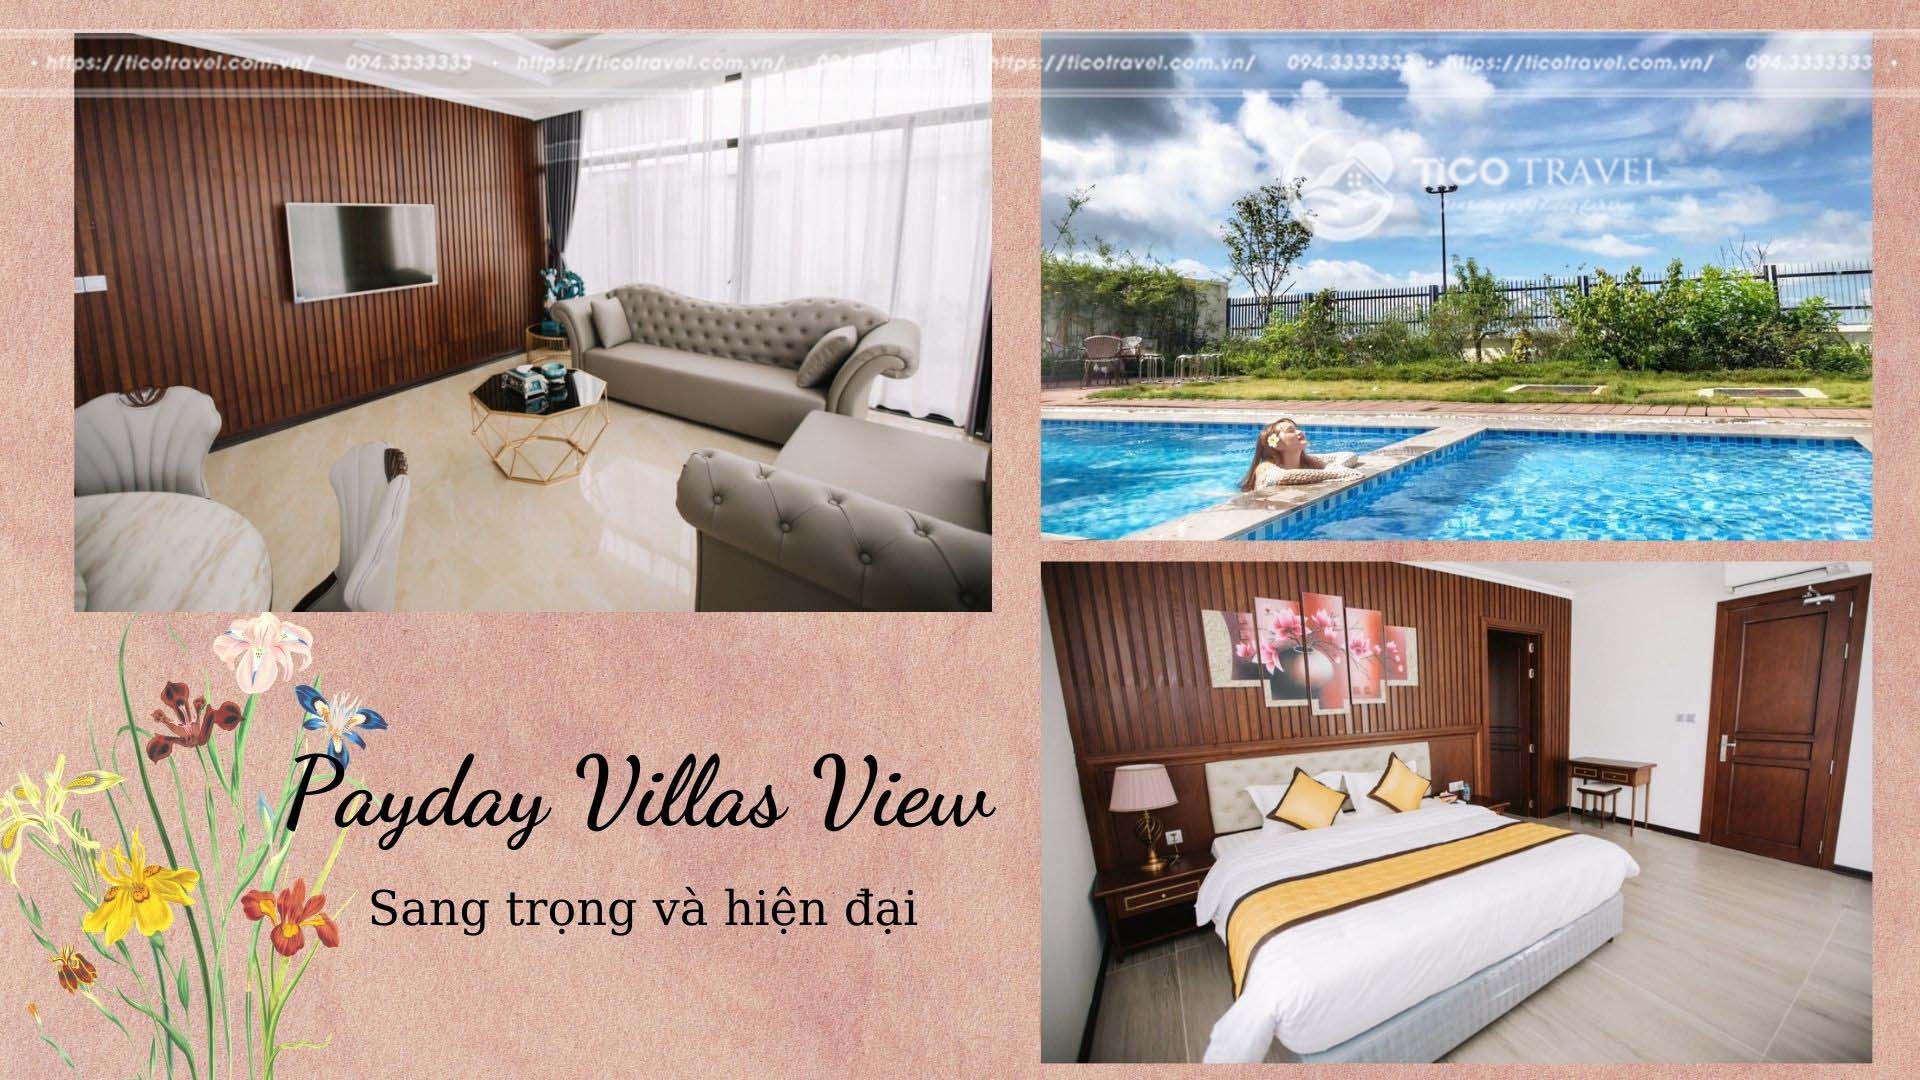 Payday Villa View Hạ Long